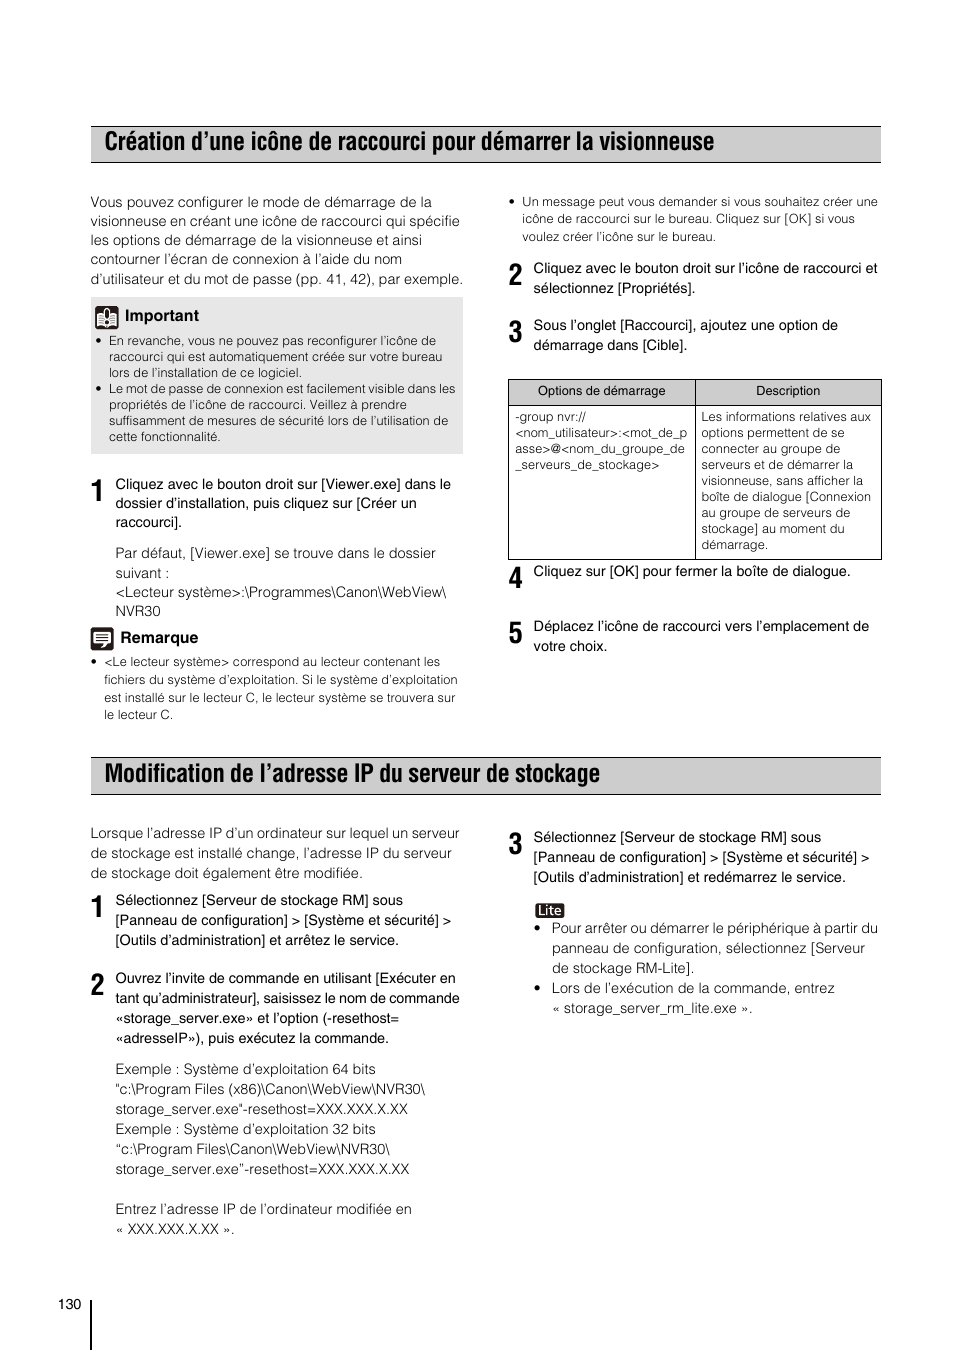 Modification de l’adresse ip, Du serveur de stockage » (p. 130) | Canon VB-H610D Manuel d'utilisation | Page 130 / 138